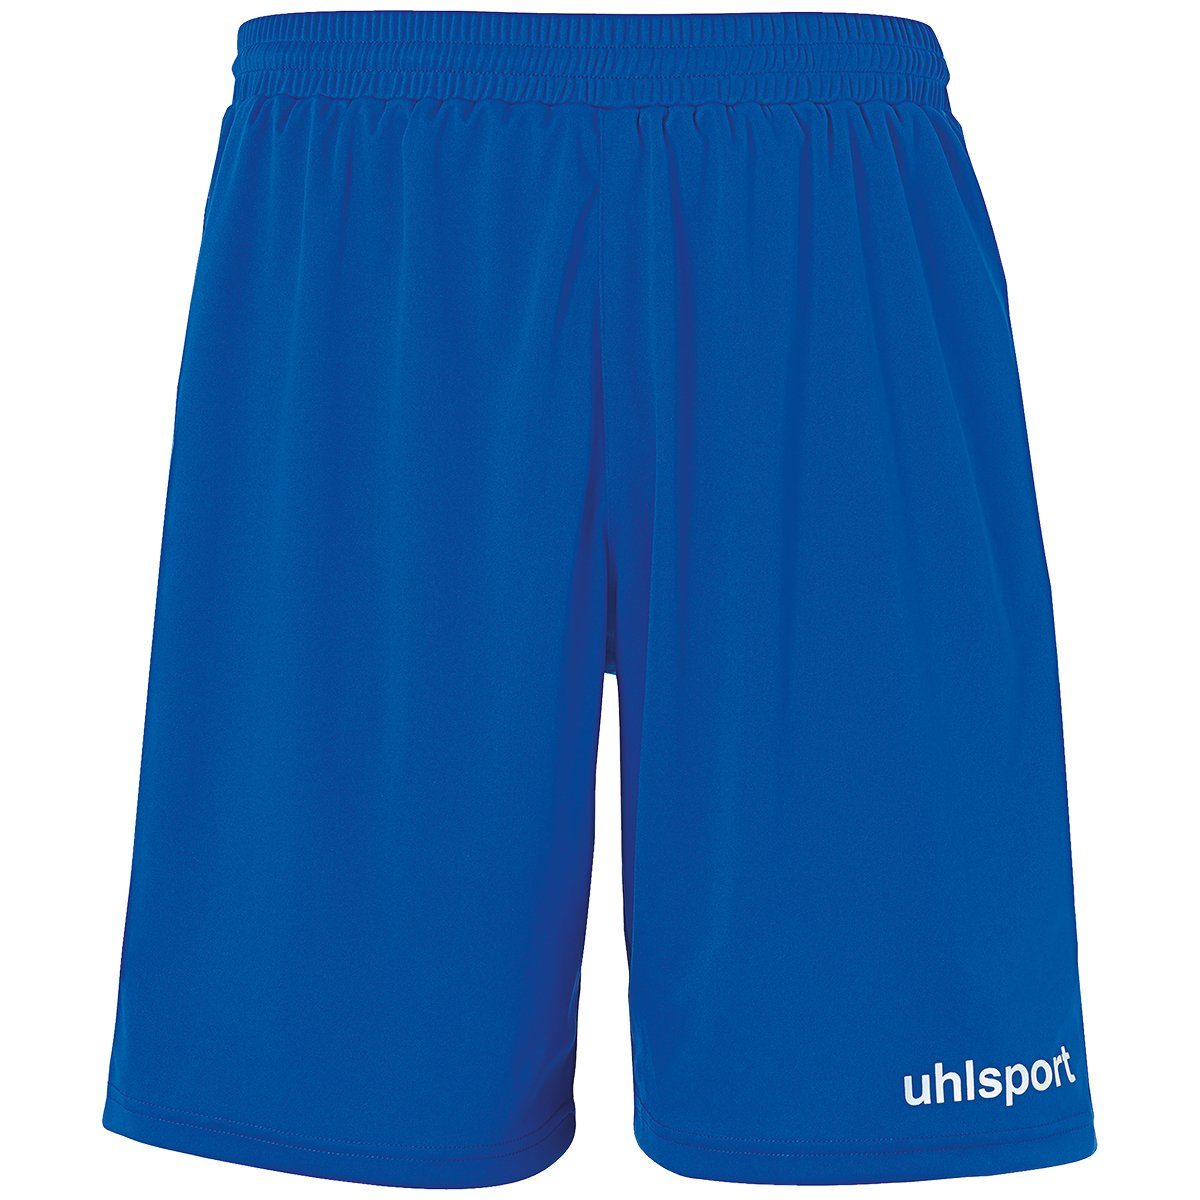 PERFORMANCE SHORTS Shorts uhlsport Shorts uhlsport azurblau/weiß